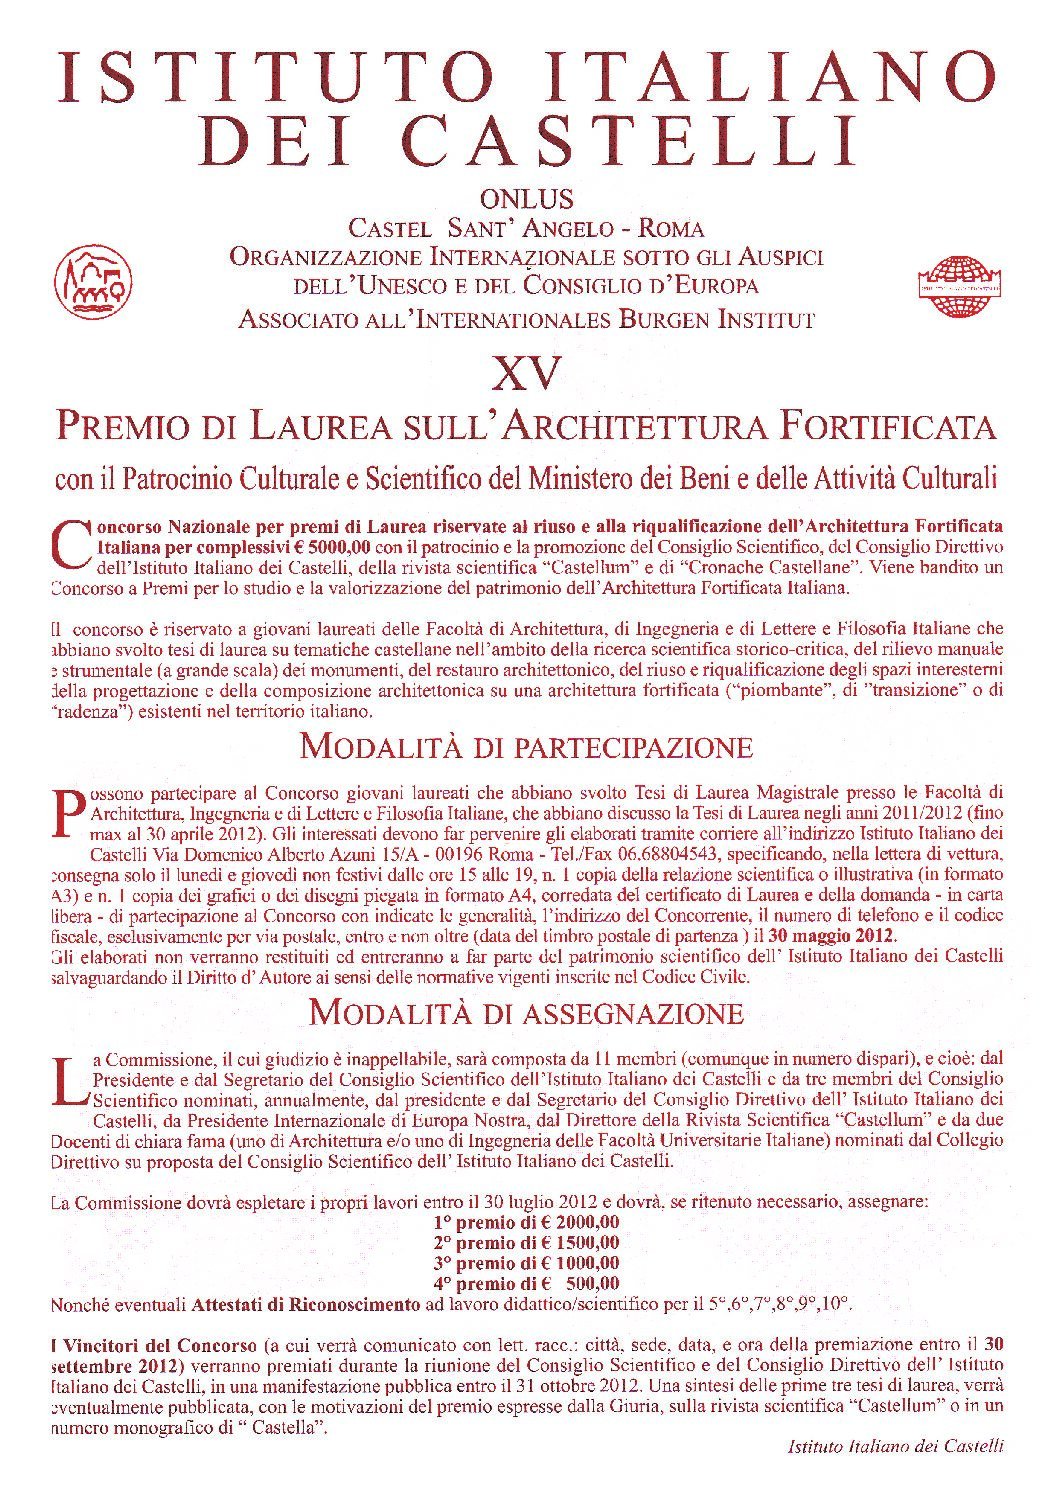 XV Premio di Laurea sull’Architettura Fortificata